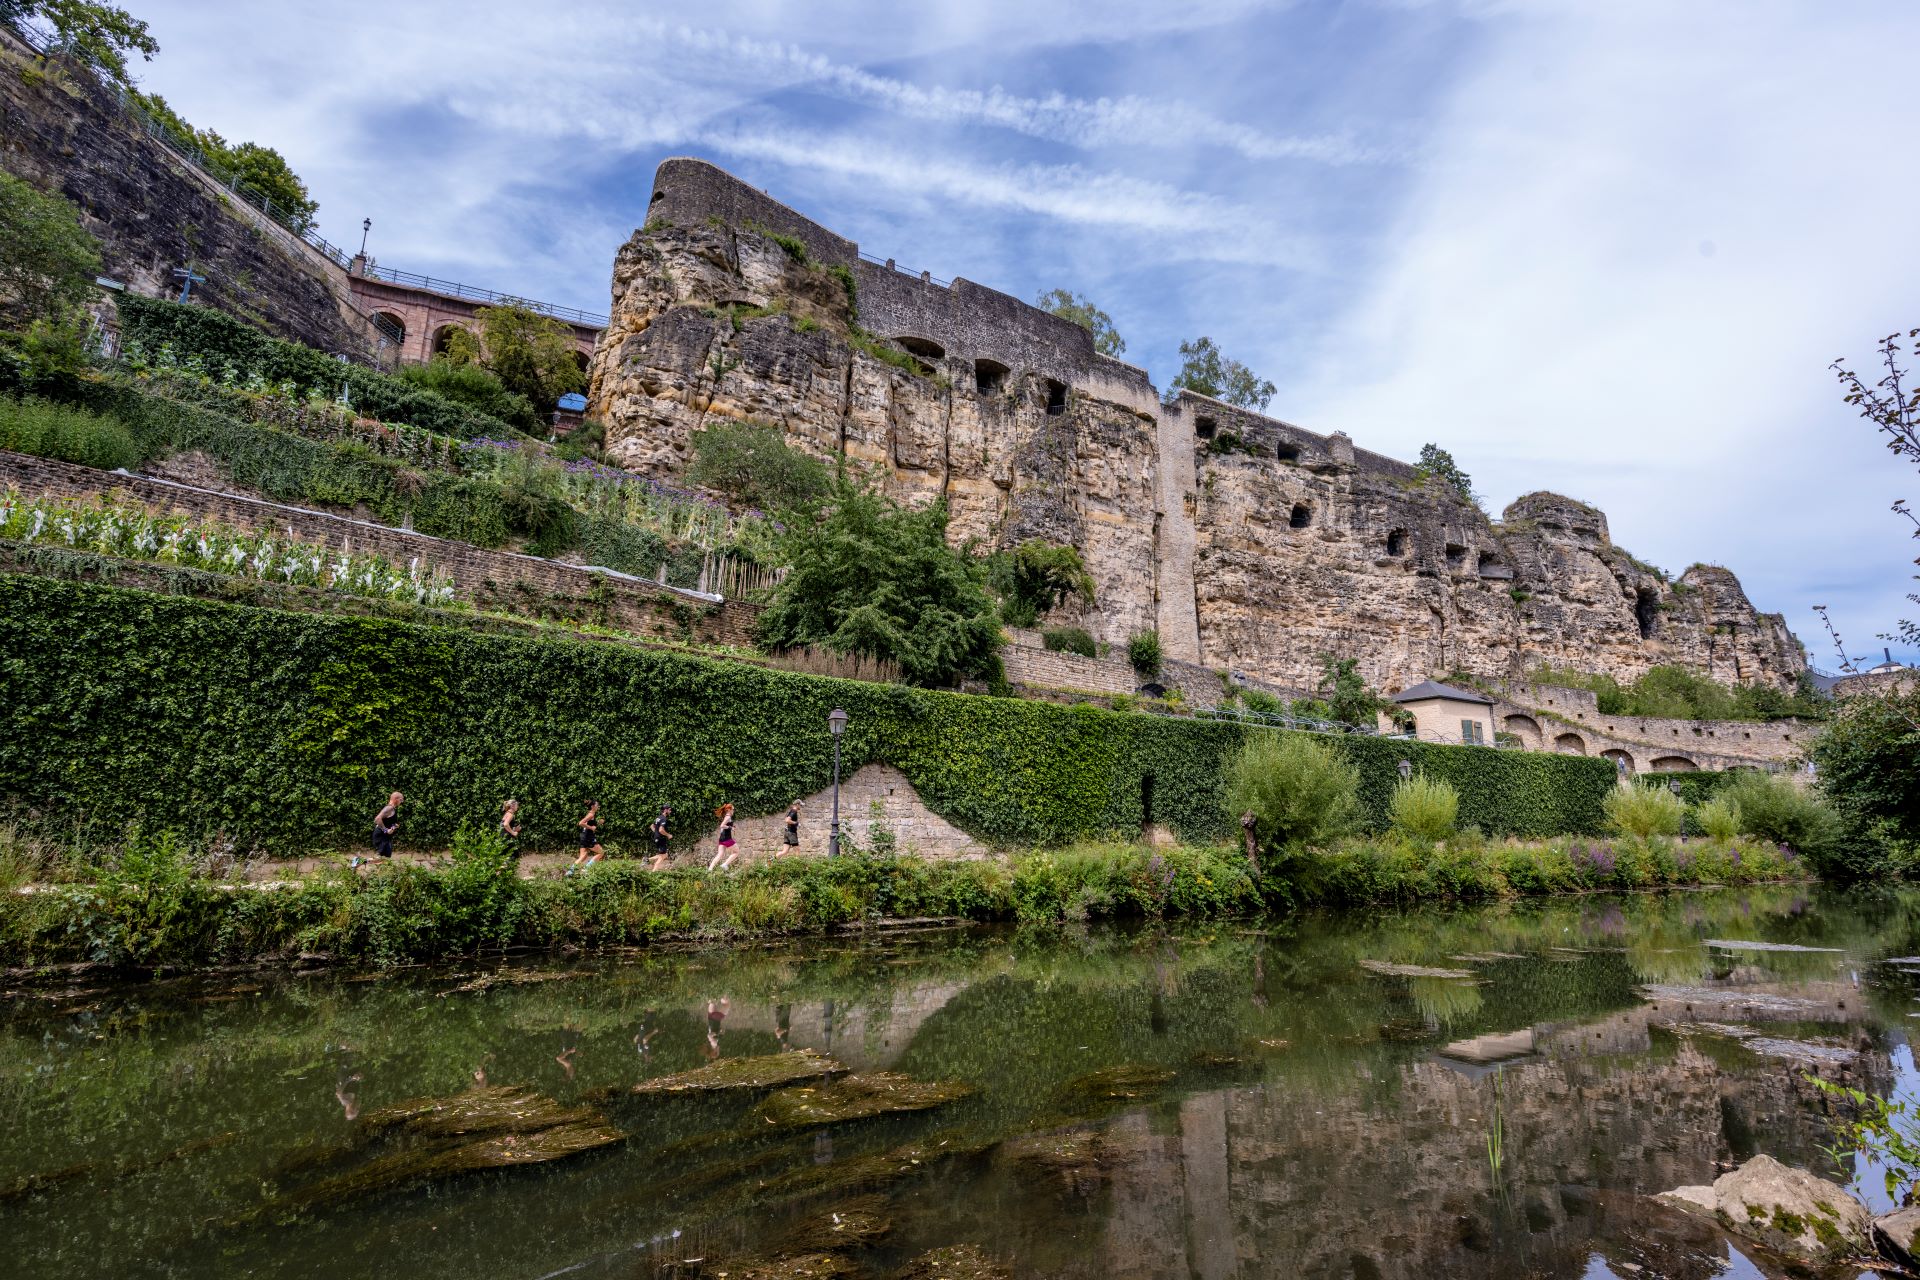 Blauer Himmel und grünes Moos heben die Überreste der Festung Luxemburg hervor, die man vom kleinen Fluss unterhalb der Festungsmauern aus sehen kann.